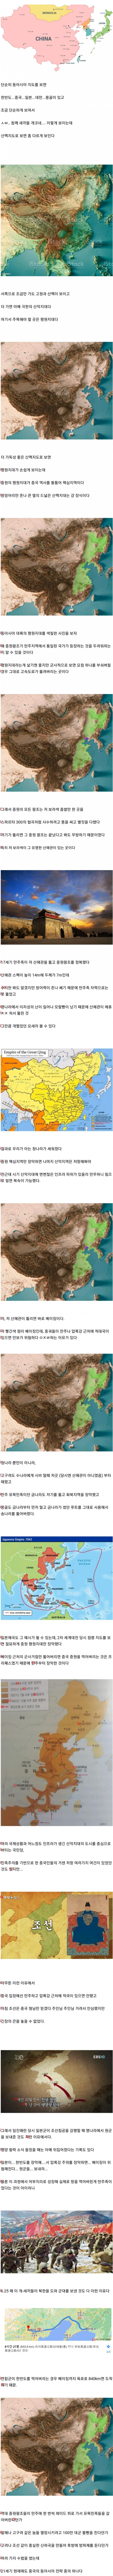 中国が韓半島と満州を絶えず牽制した理由